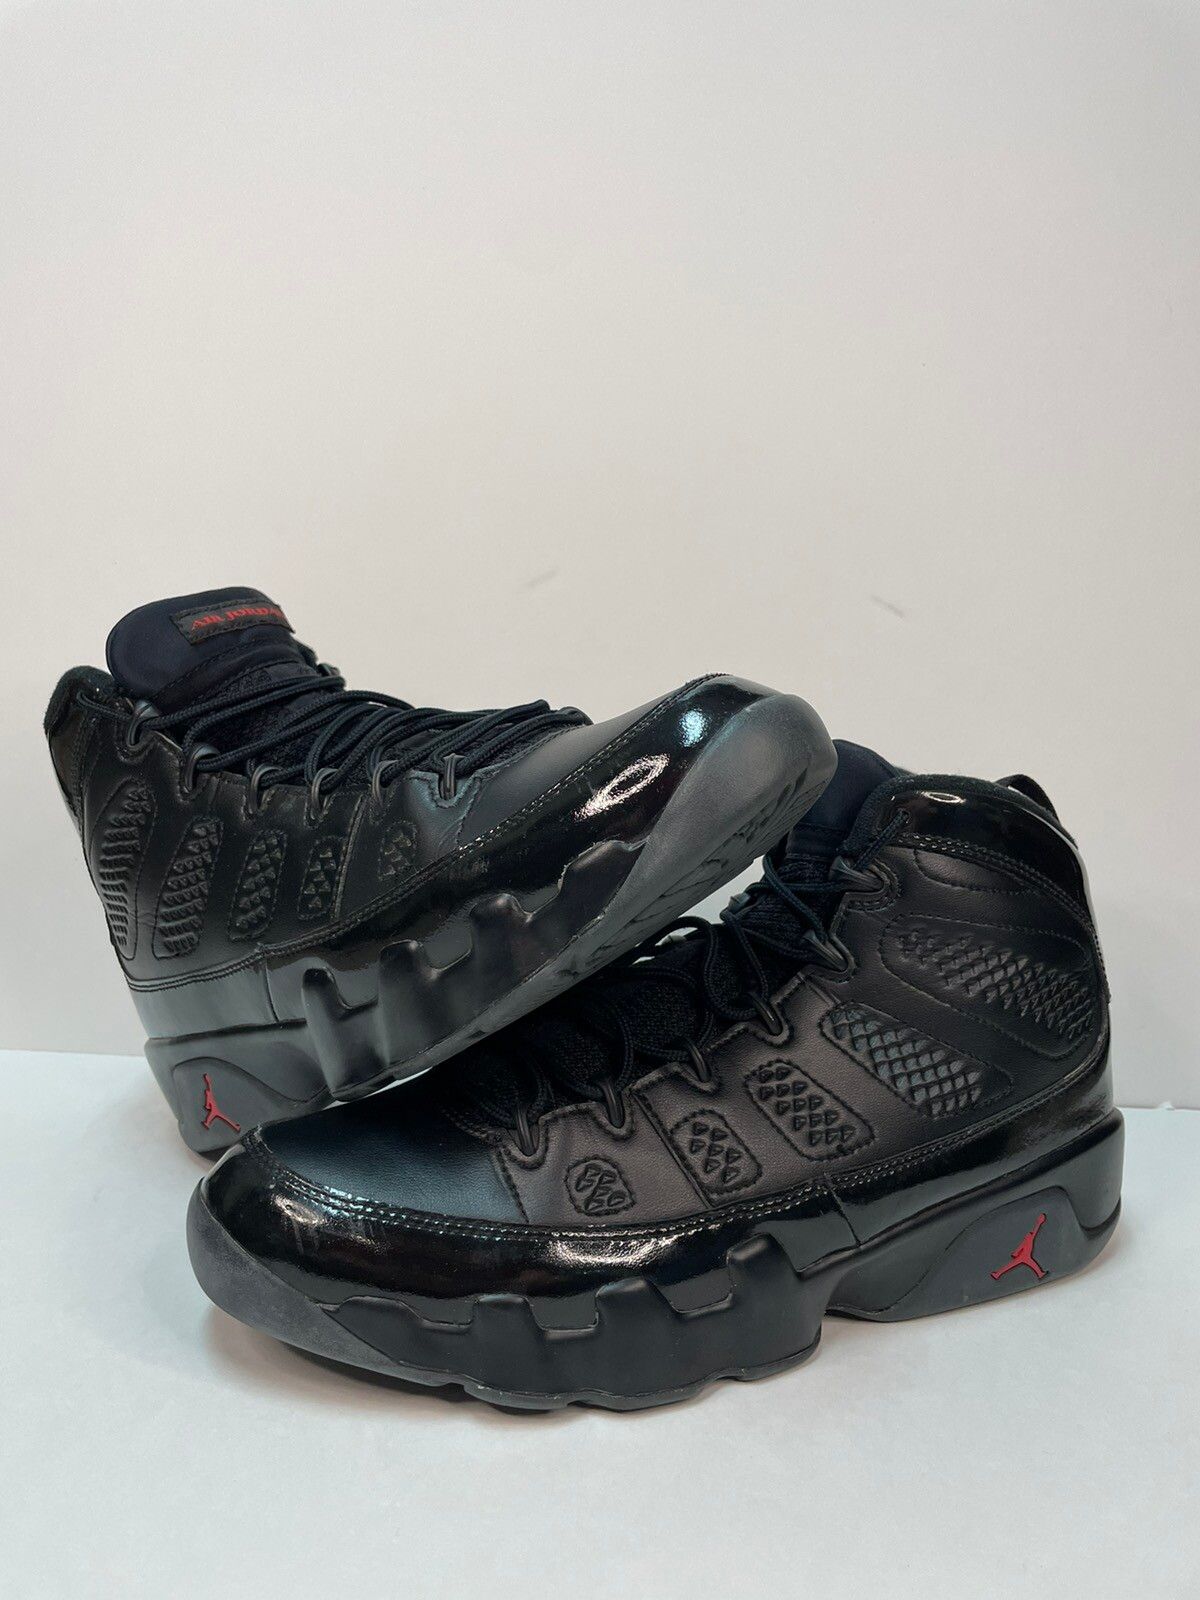 Pre-owned Jordan Brand Air Jordan 9 Retro Bred Shoes In Black